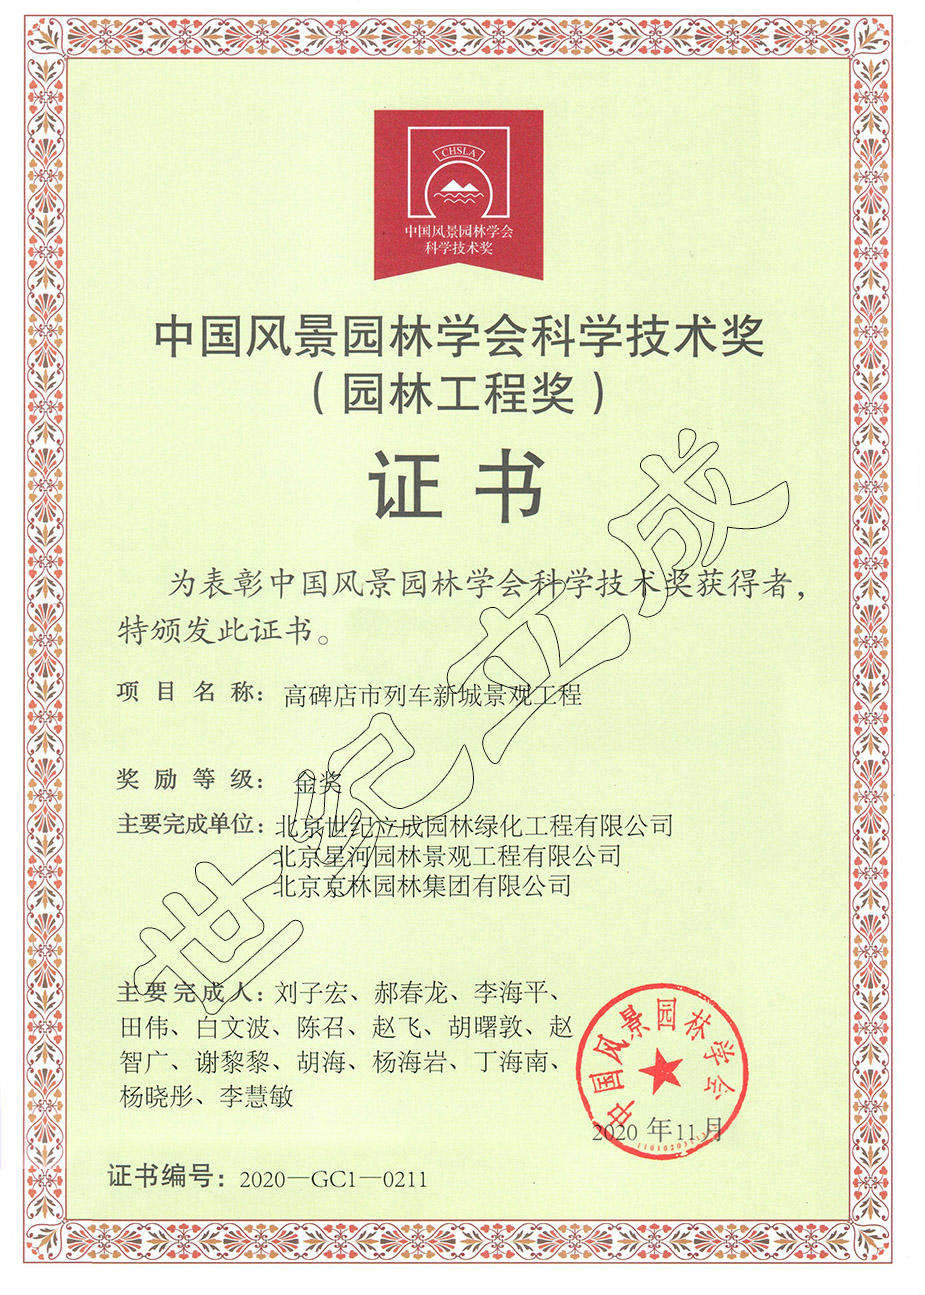 中国风景园林学会科学技术奖金奖